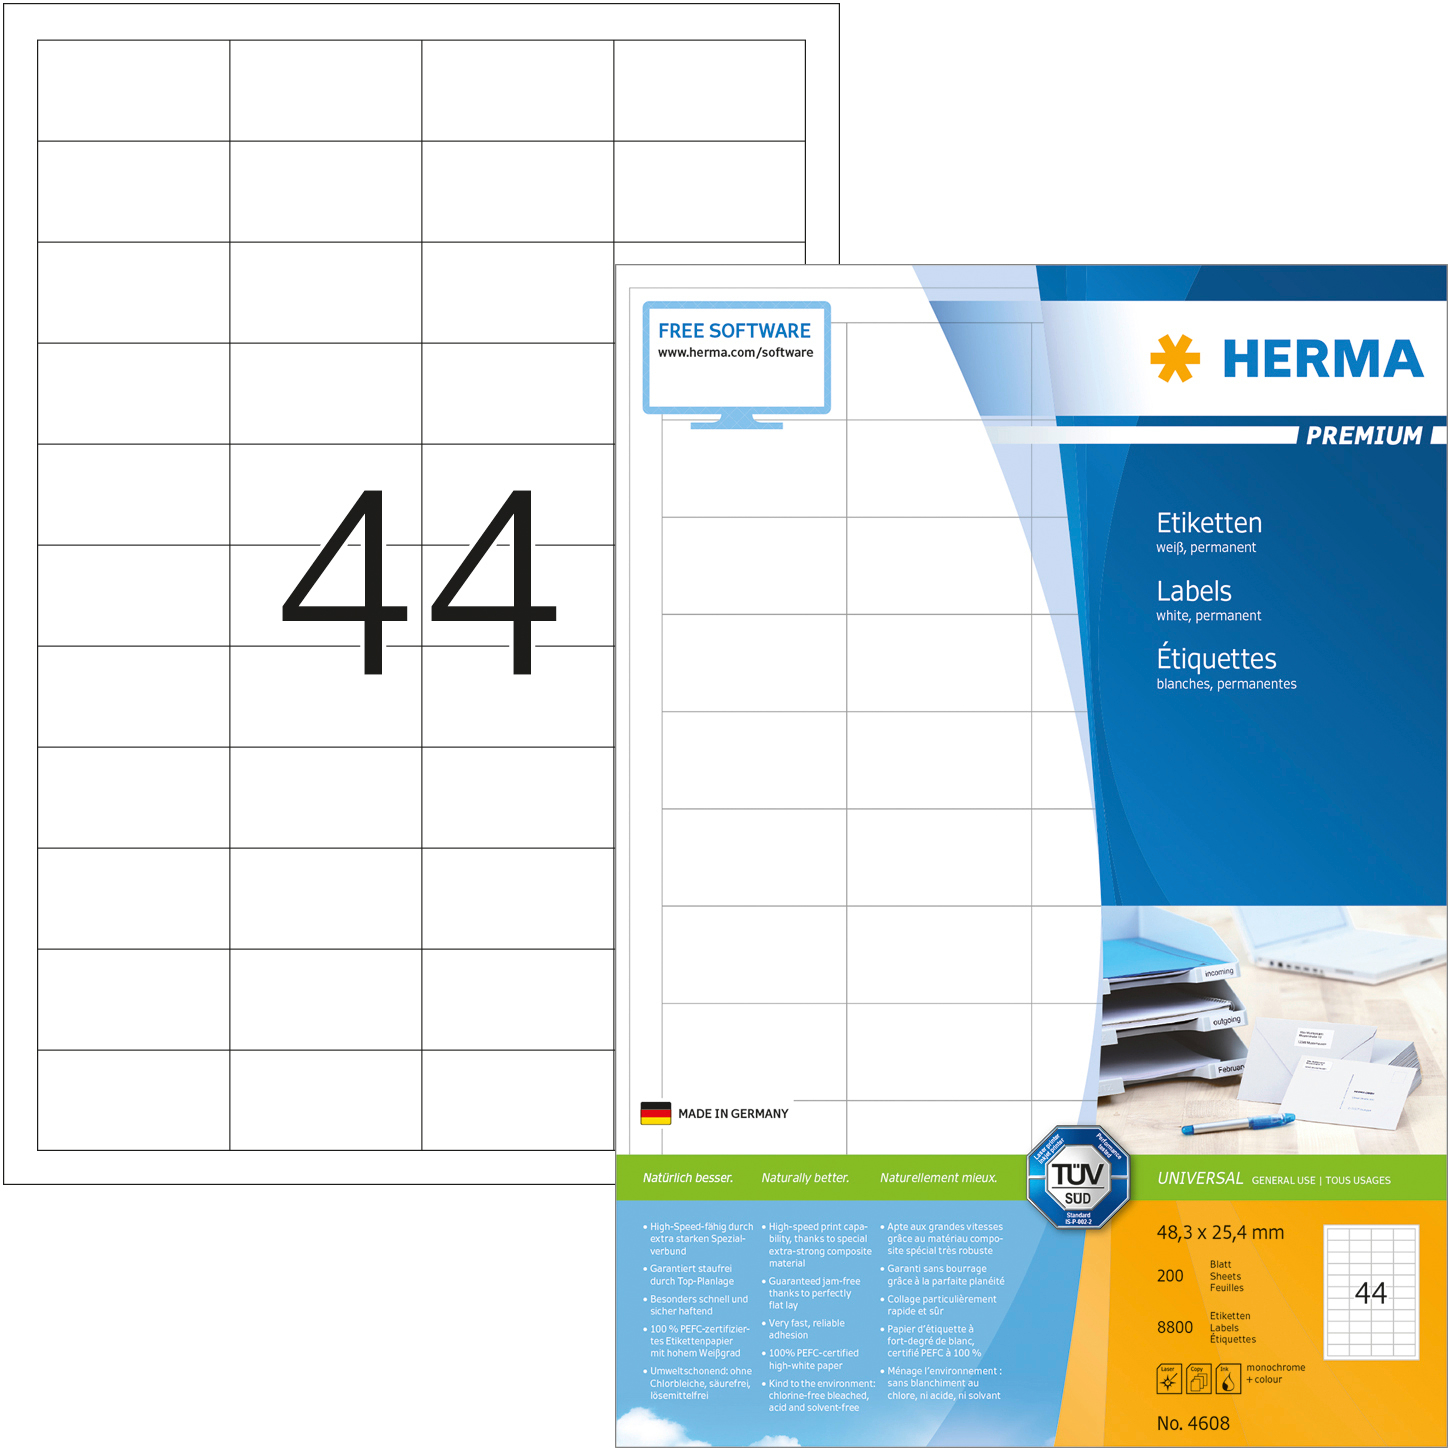 HERMA Etiquettes Premium 48,3×25,4mm 4608 blanc 8800 pcs.